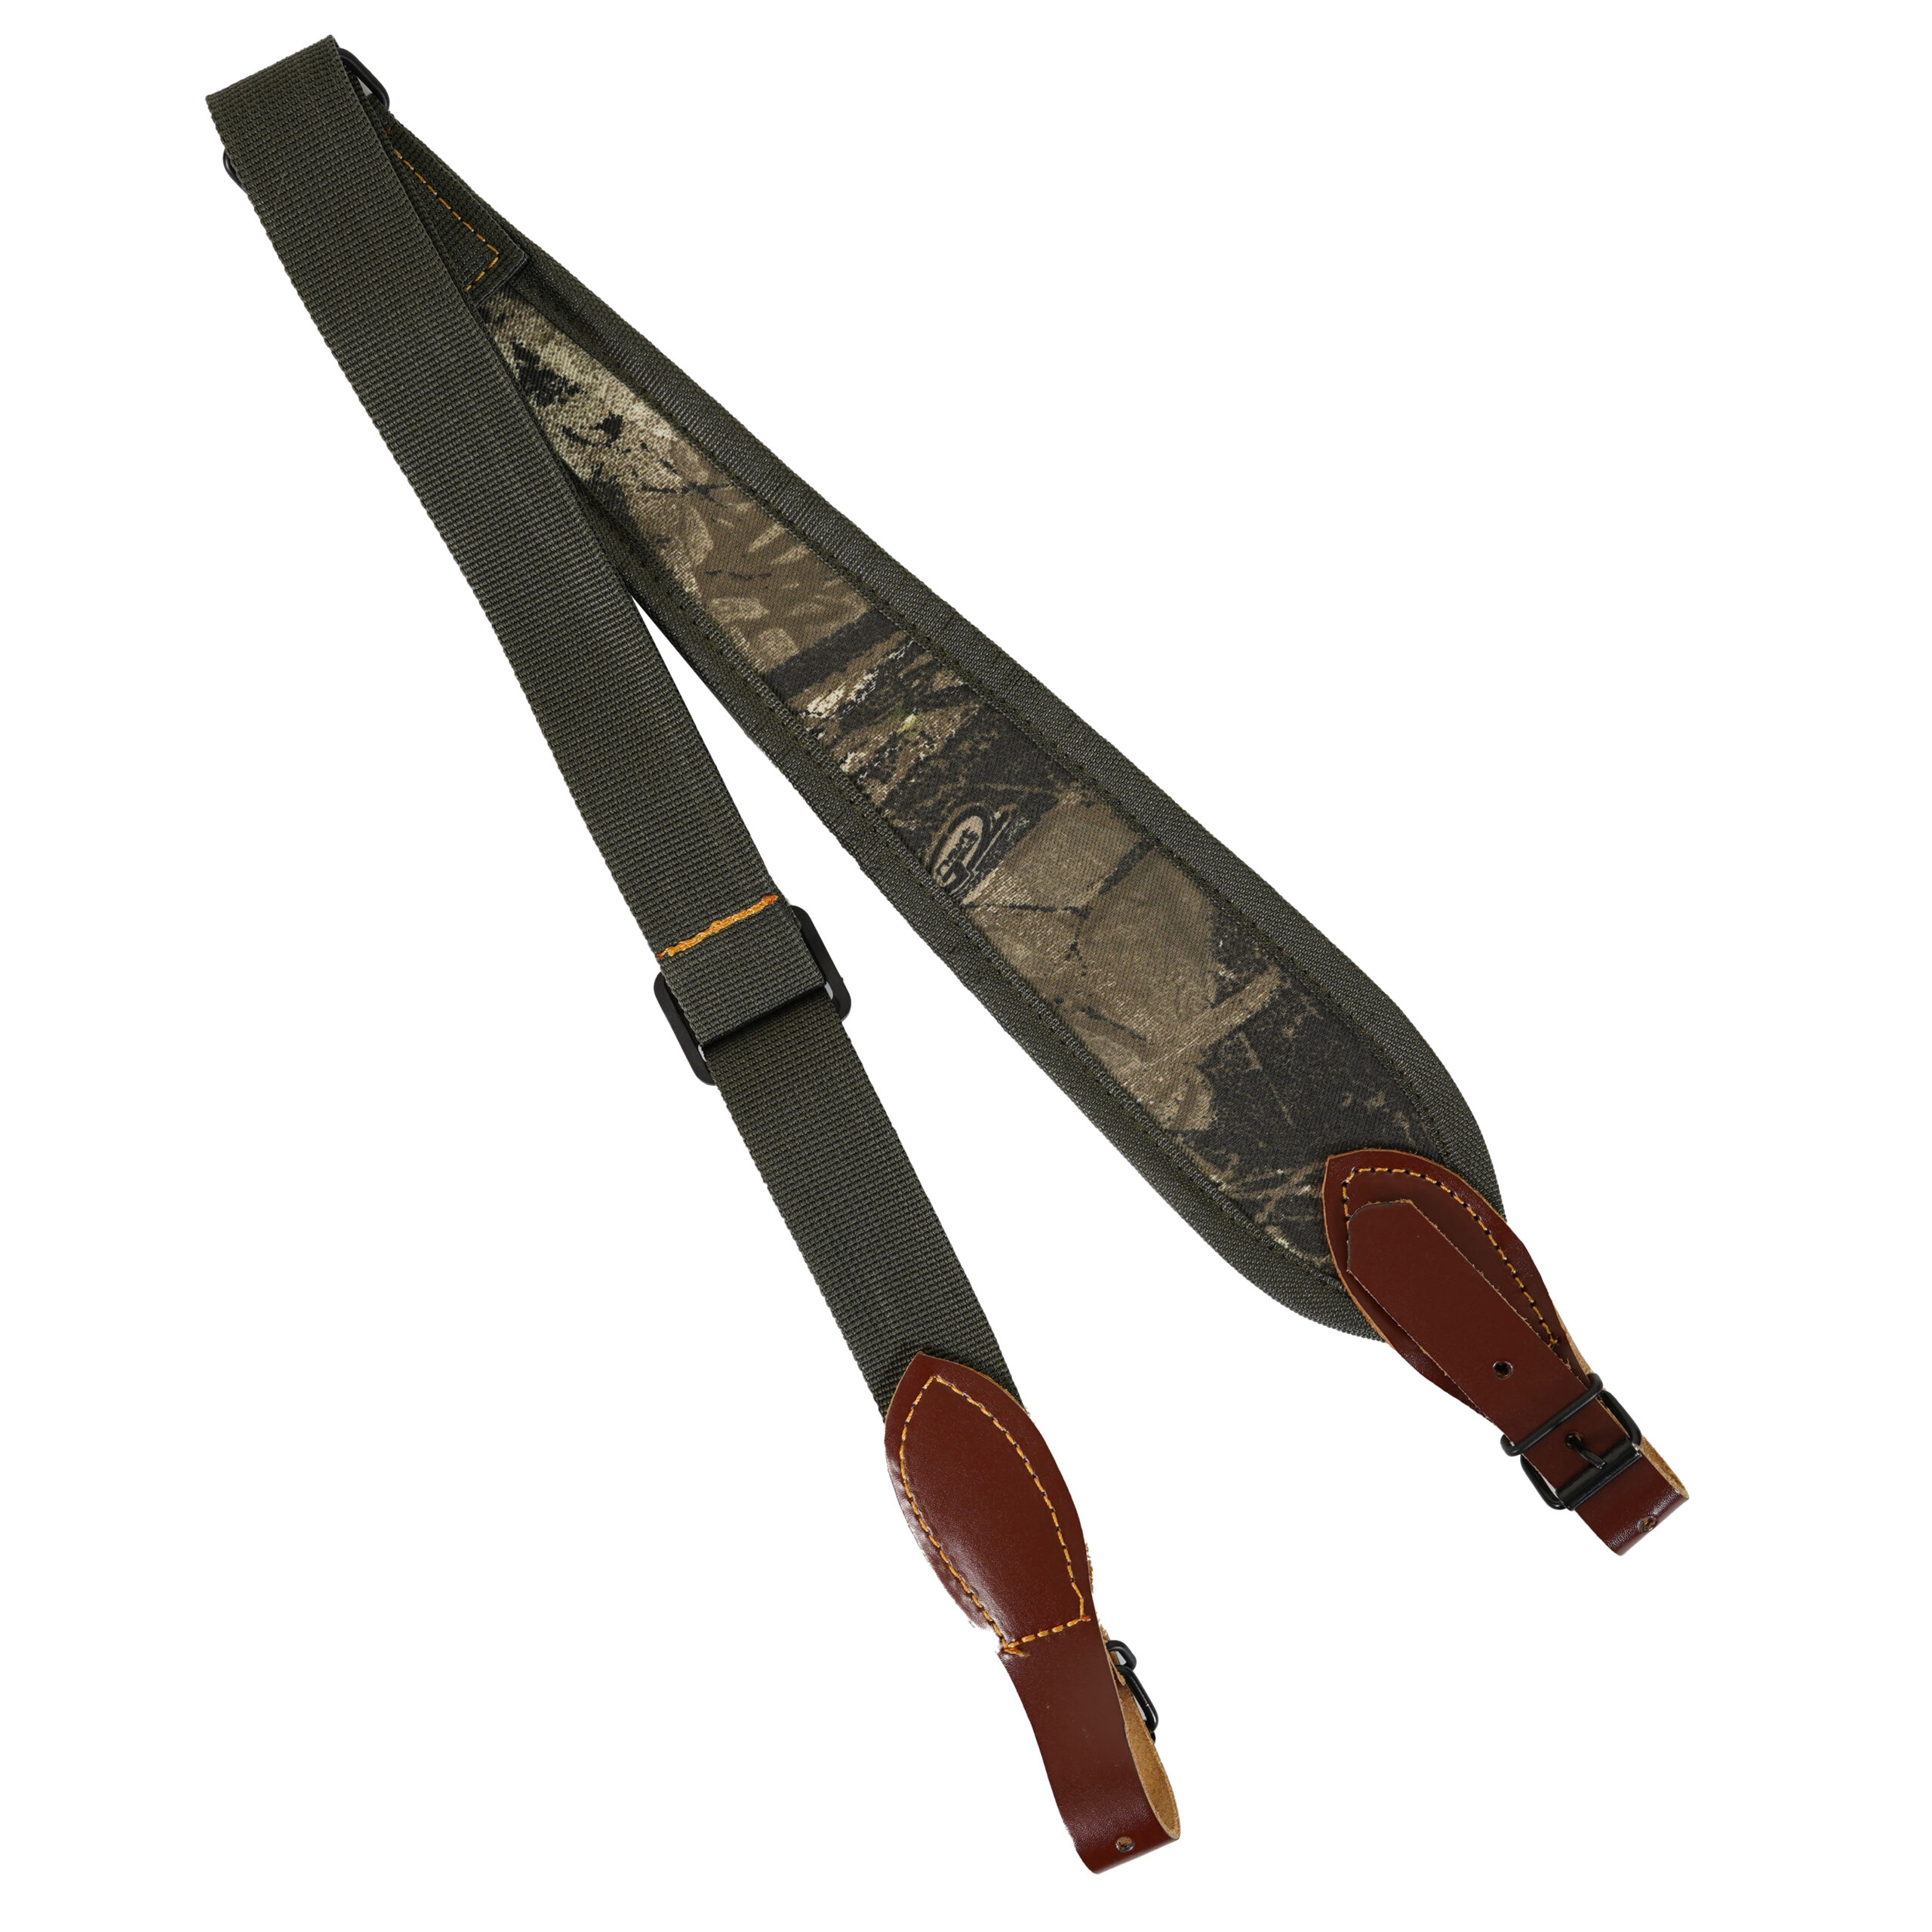 leather shotgun sling, soulder belt strap